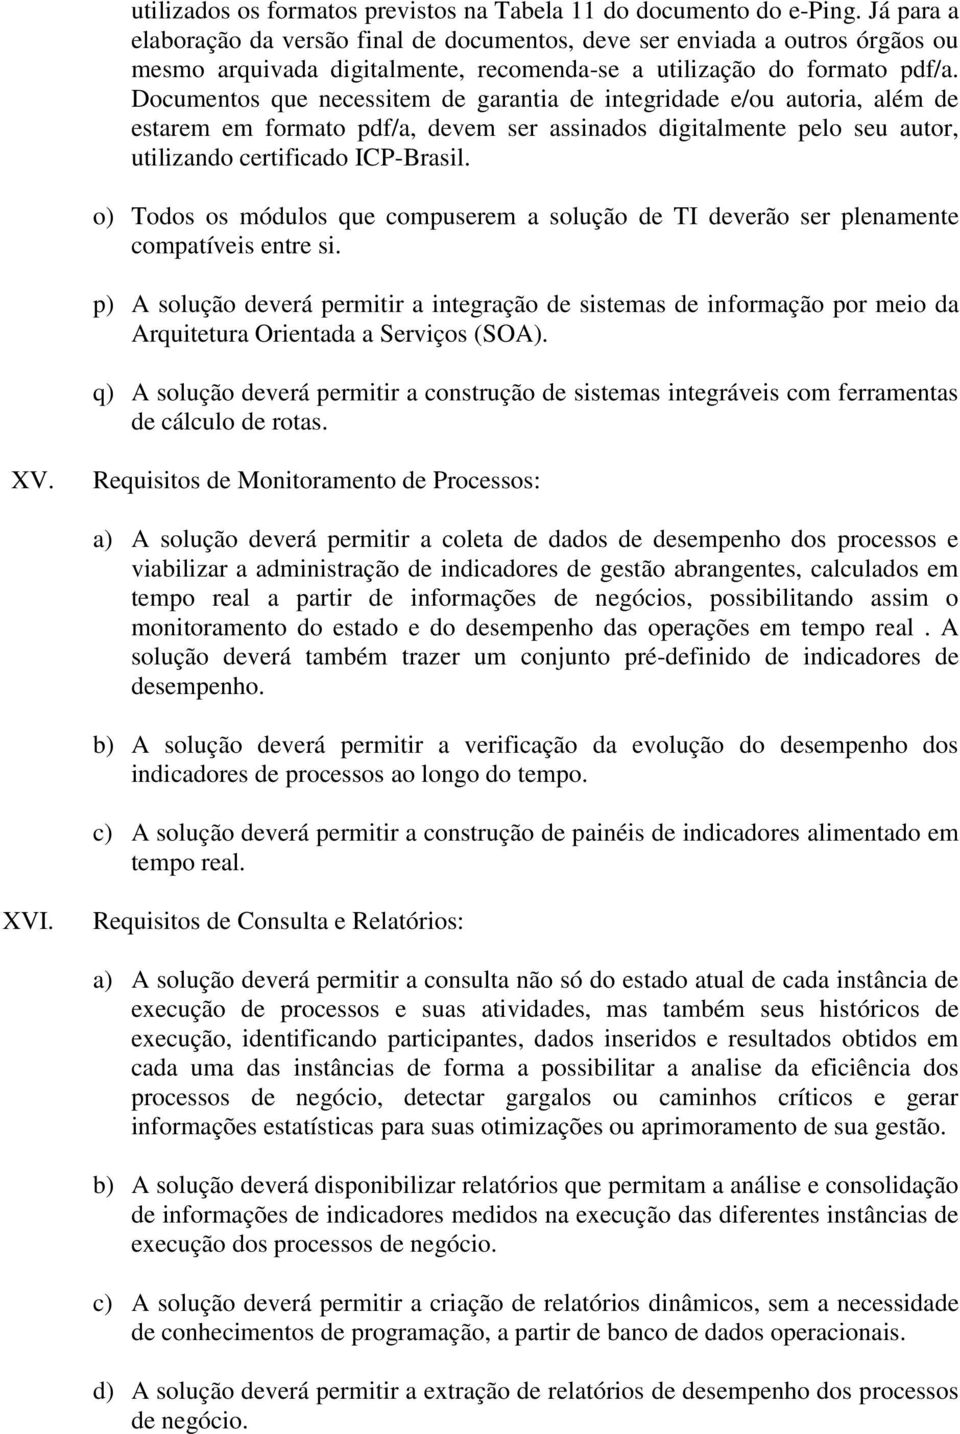 Documentos que necessitem de garantia de integridade e/ou autoria, além de estarem em formato pdf/a, devem ser assinados digitalmente pelo seu autor, utilizando certificado ICP-Brasil.